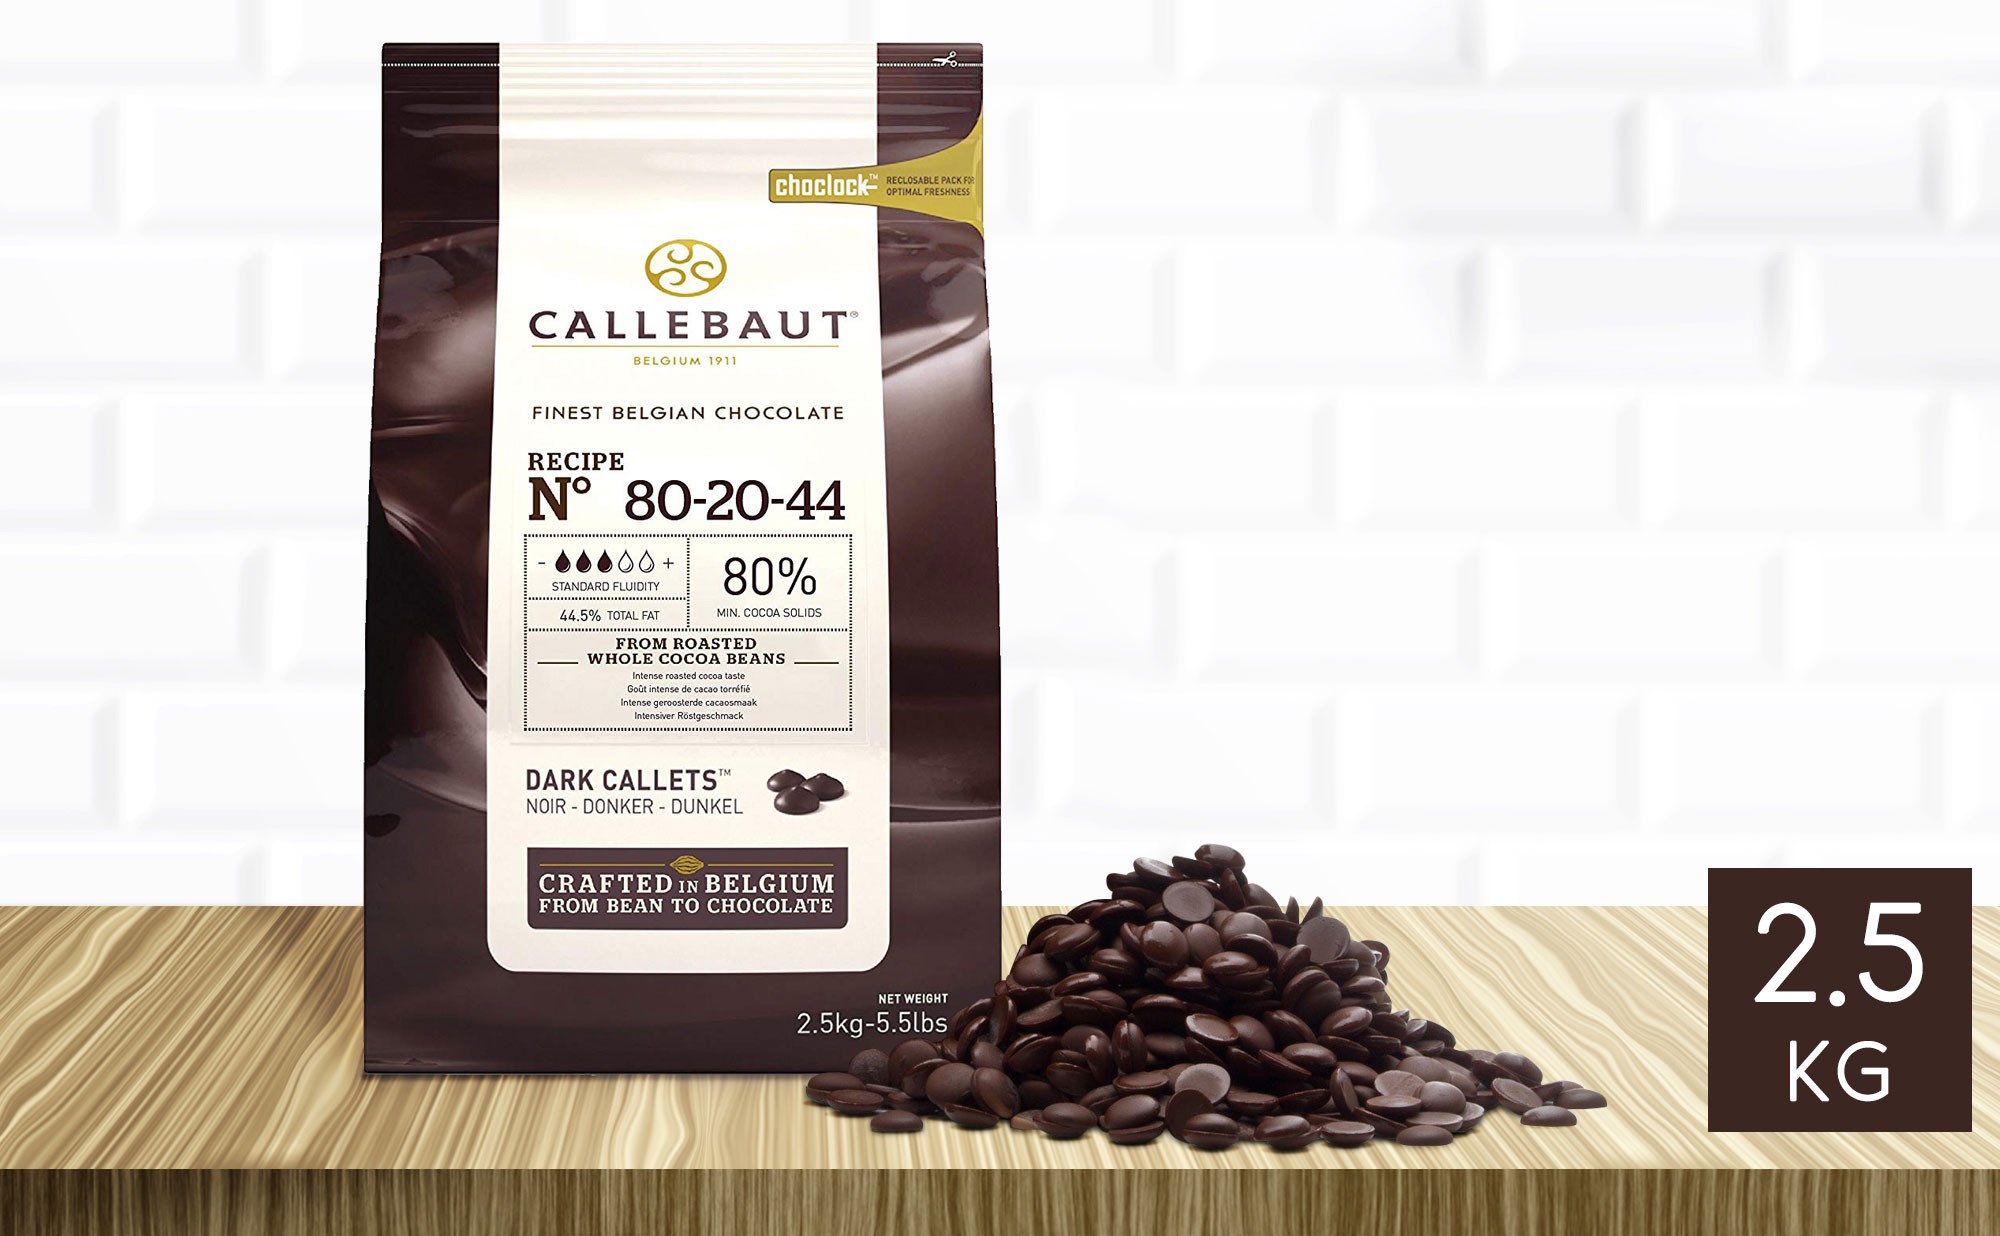 Callets chocolat noir Callebaut, chocolat de qualité professionnelle